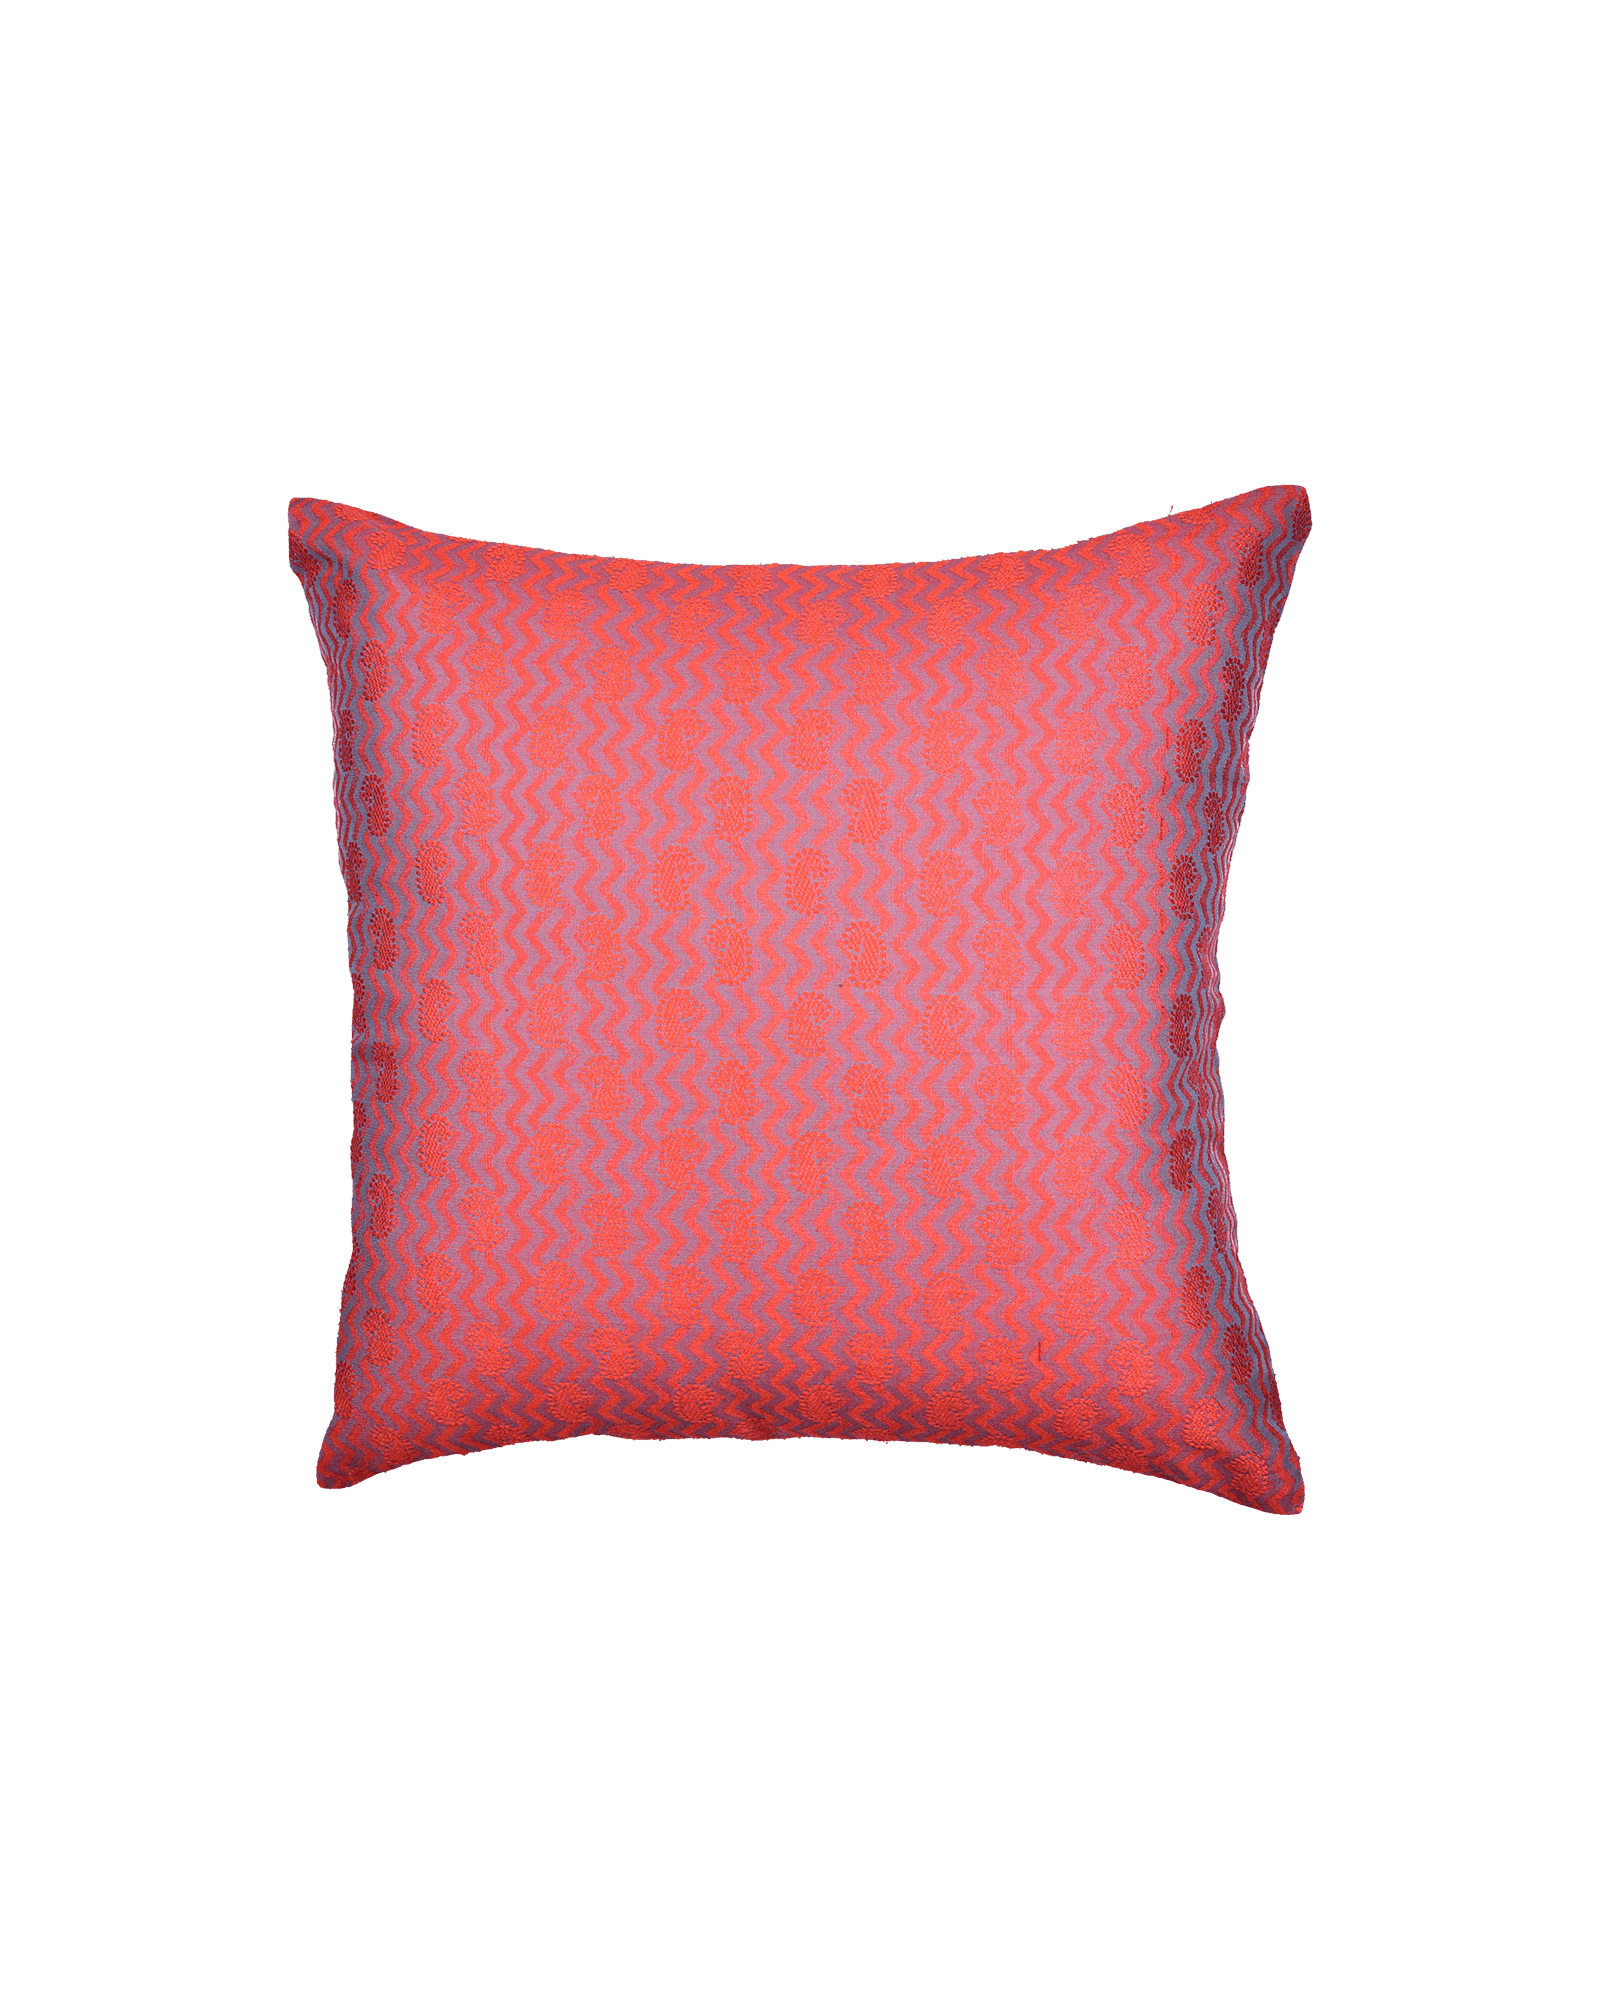 Salmon Pink Banarasi Tanchoi Cotton Silk Cushion Cover 16" - By HolyWeaves, Benares